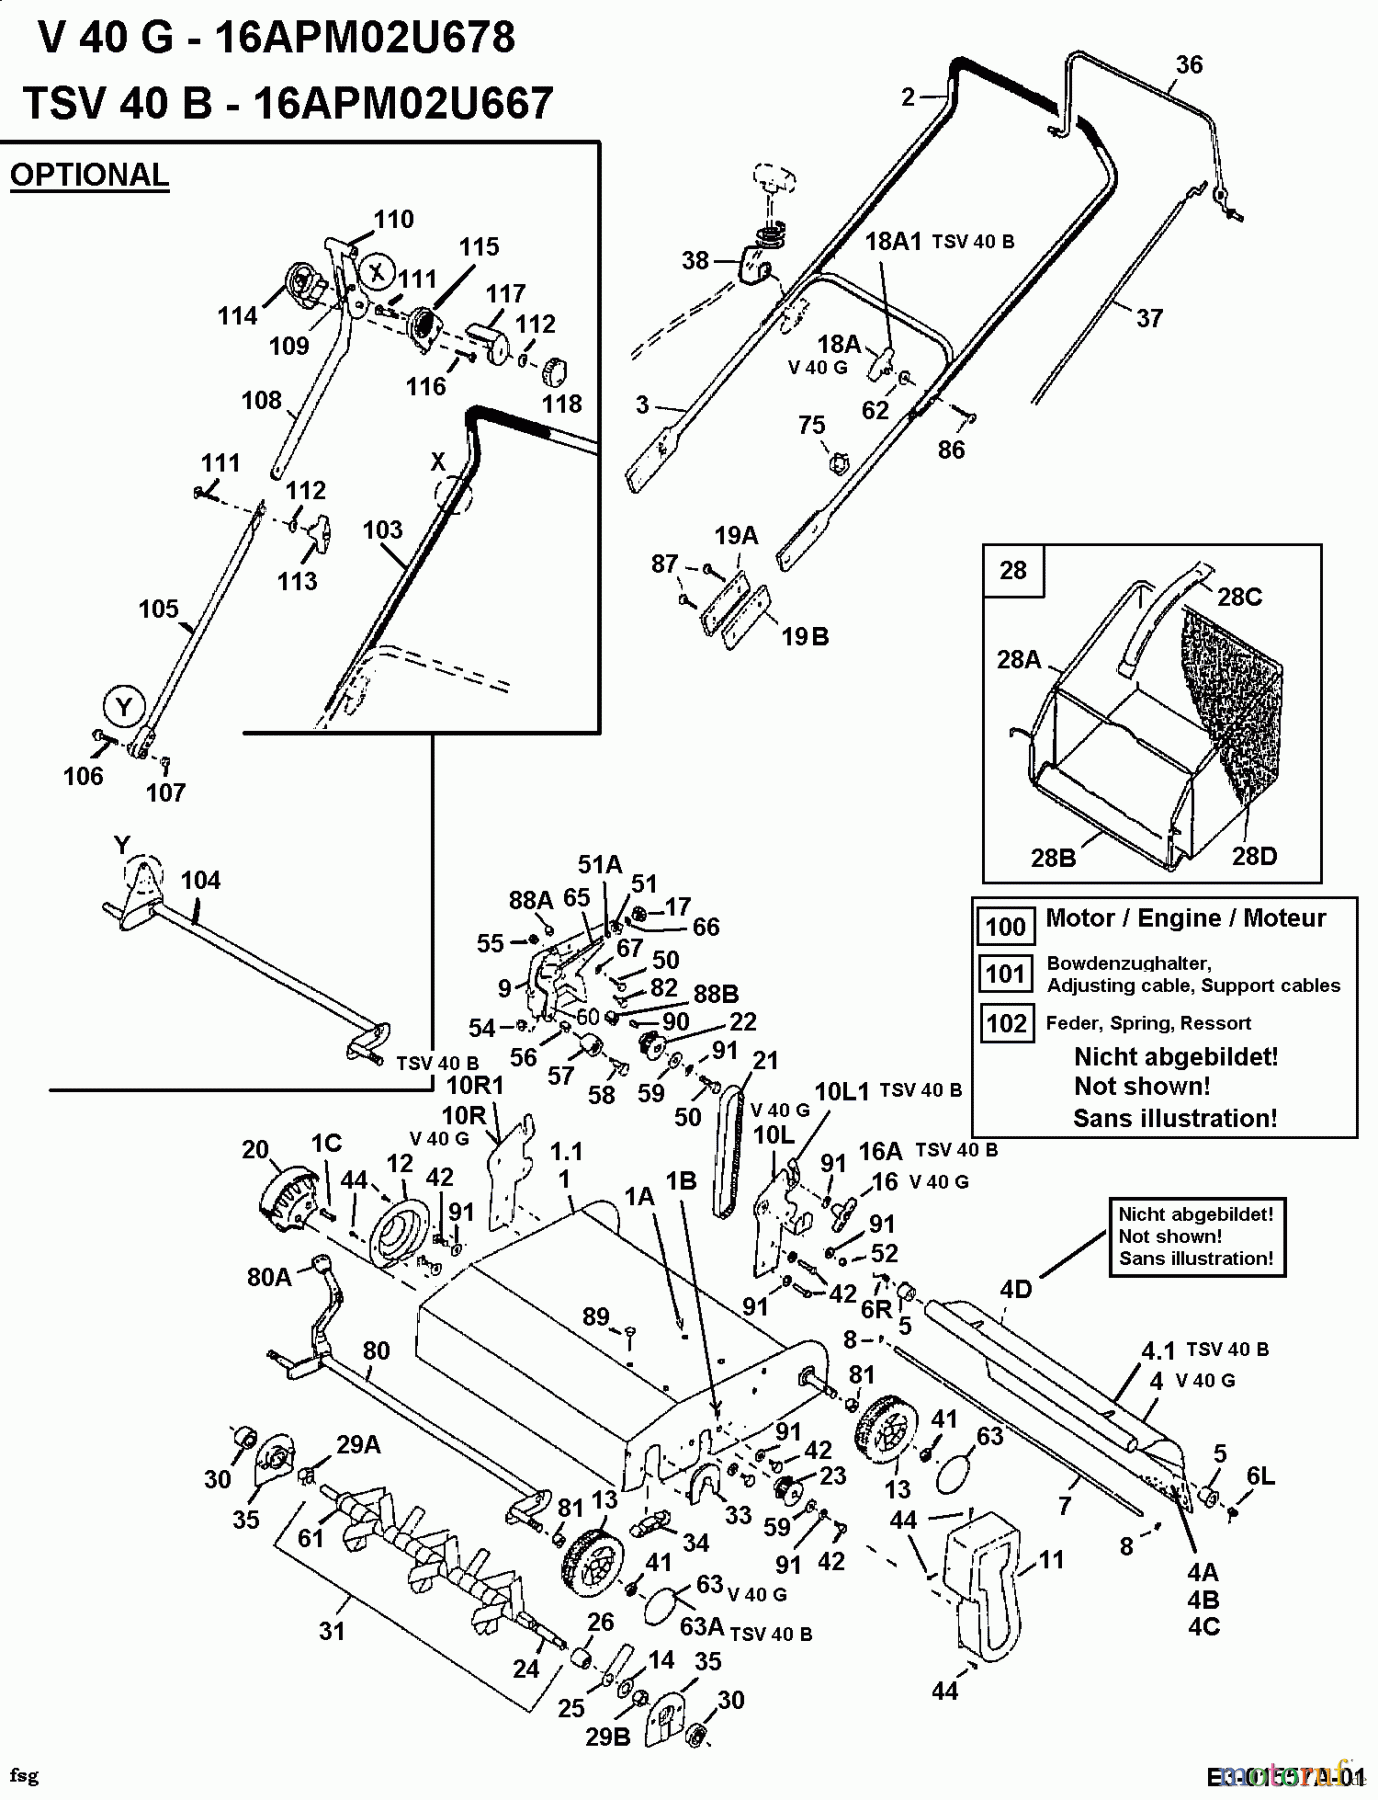  MTD Motorvertikutierer V 40 G 16APM02U678  (2001) Grundgerät